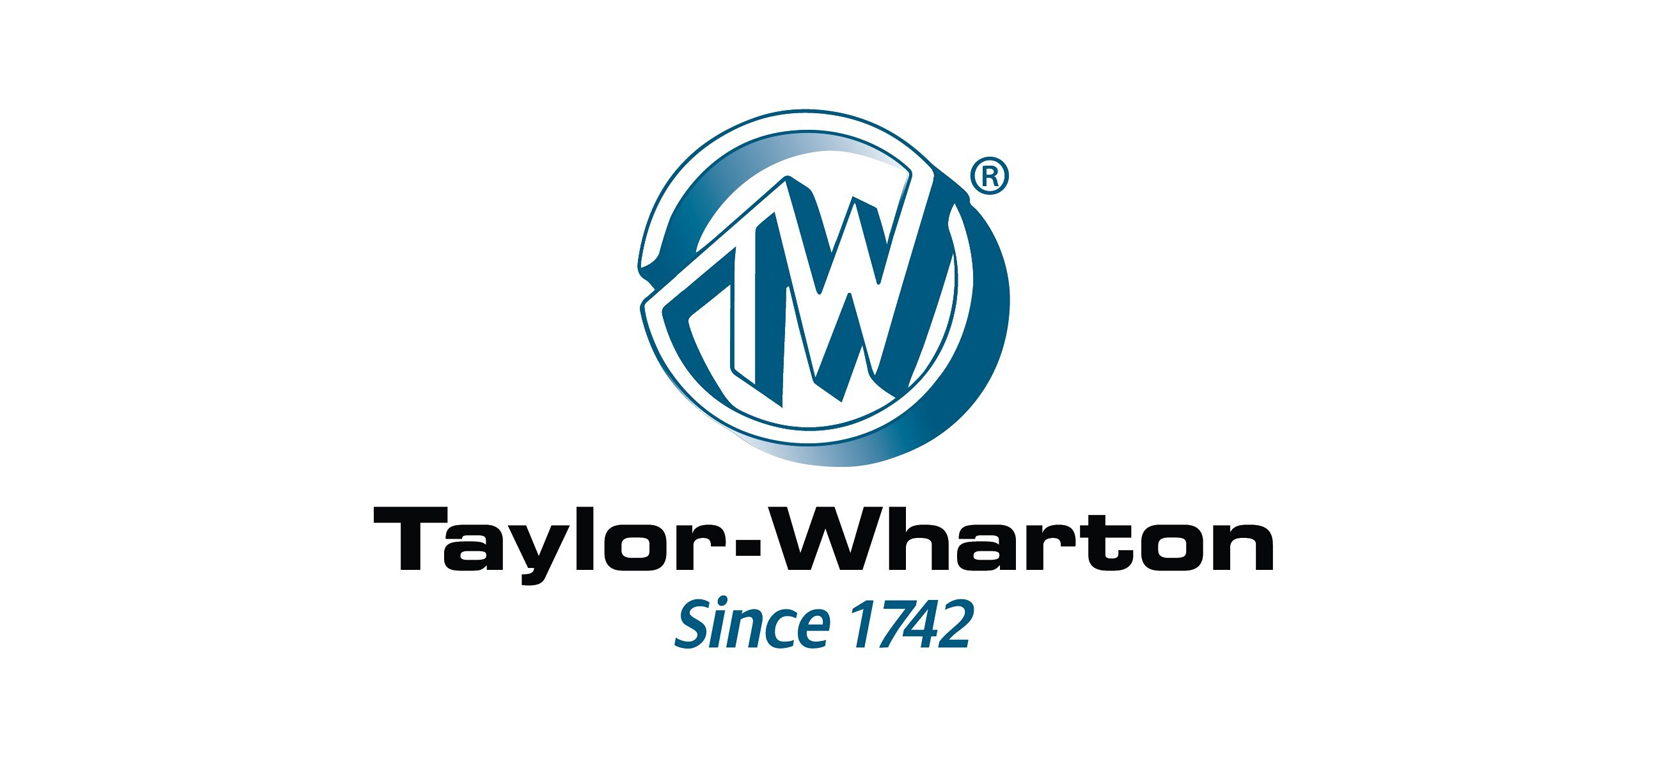 Worthington kupuje segment CryoScience firmy Taylor Wharton